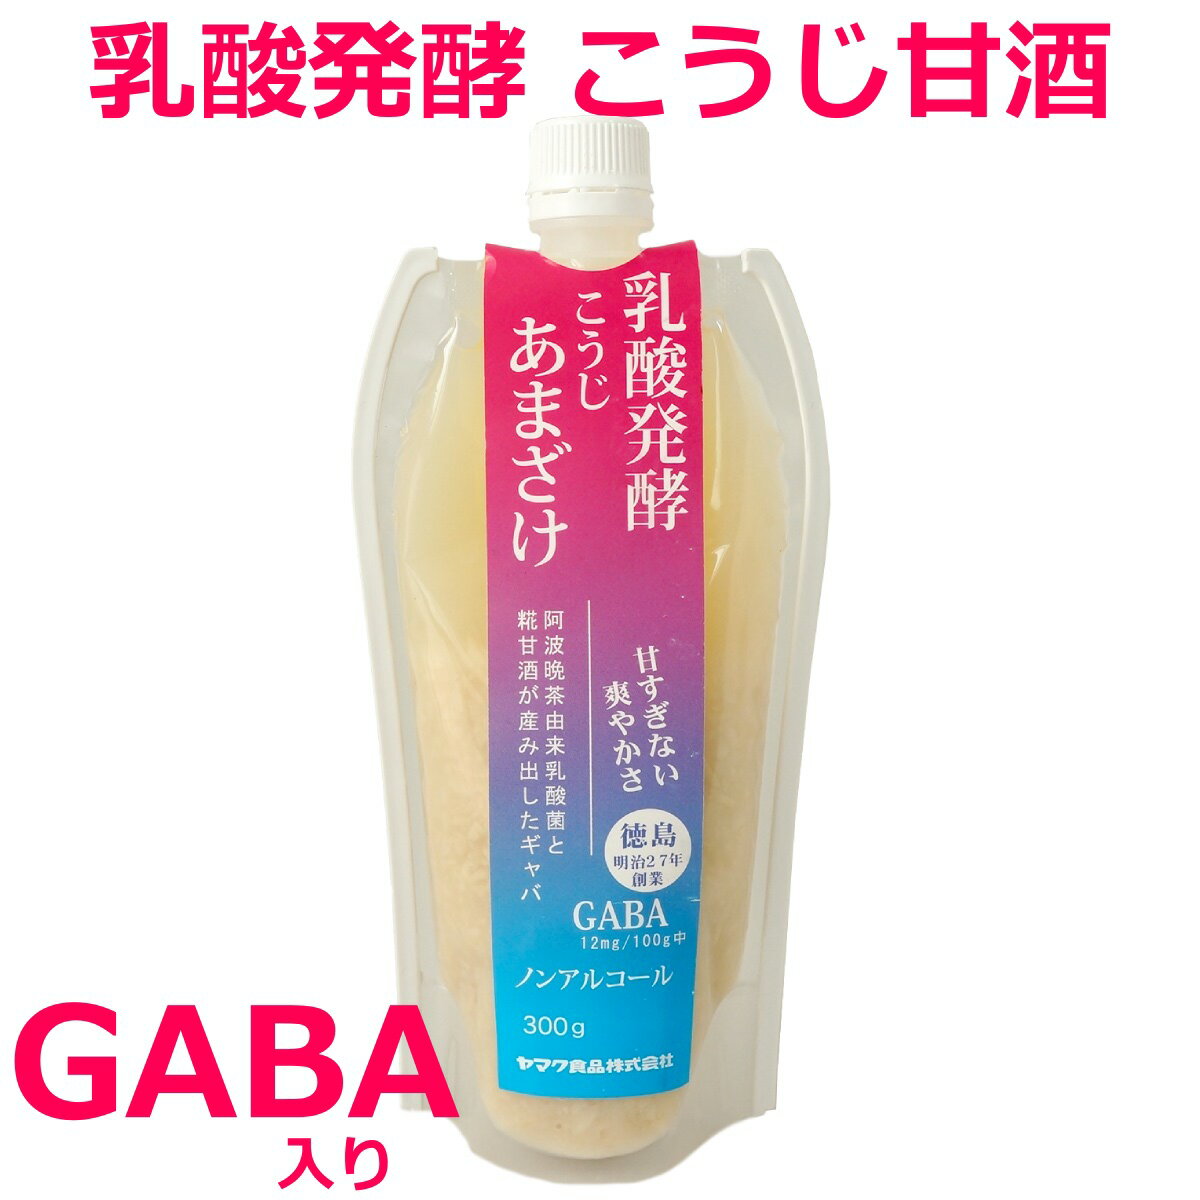 乳酸発酵 こうじ甘酒 (GABA 含有) 300g 